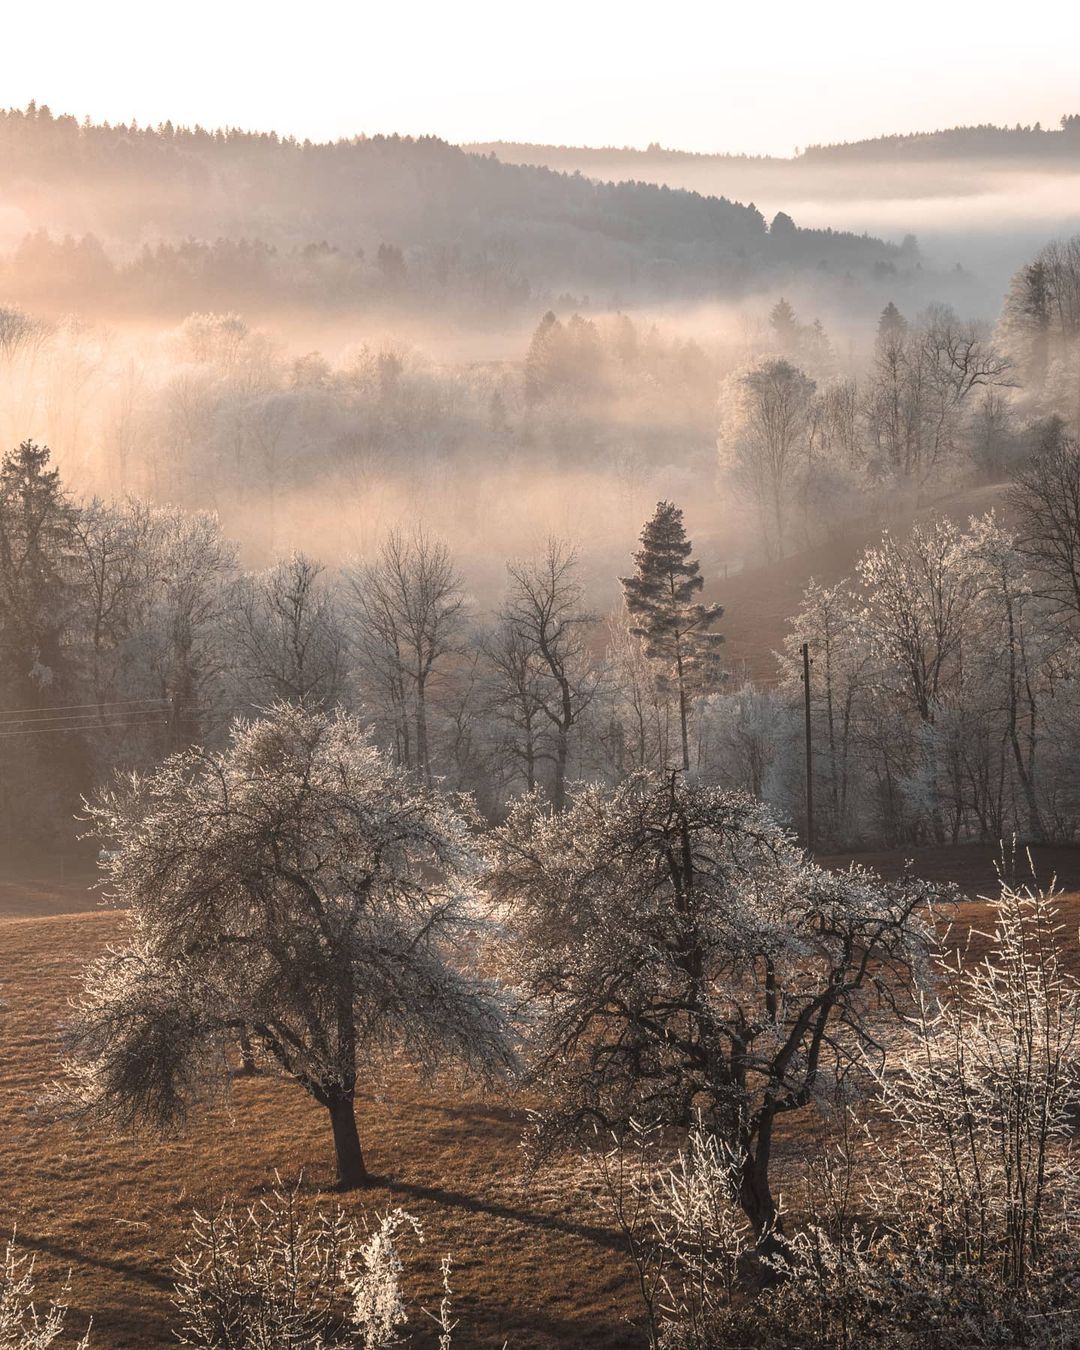 Волшебные пейзажи Швейцарии от Синха Боксбергера